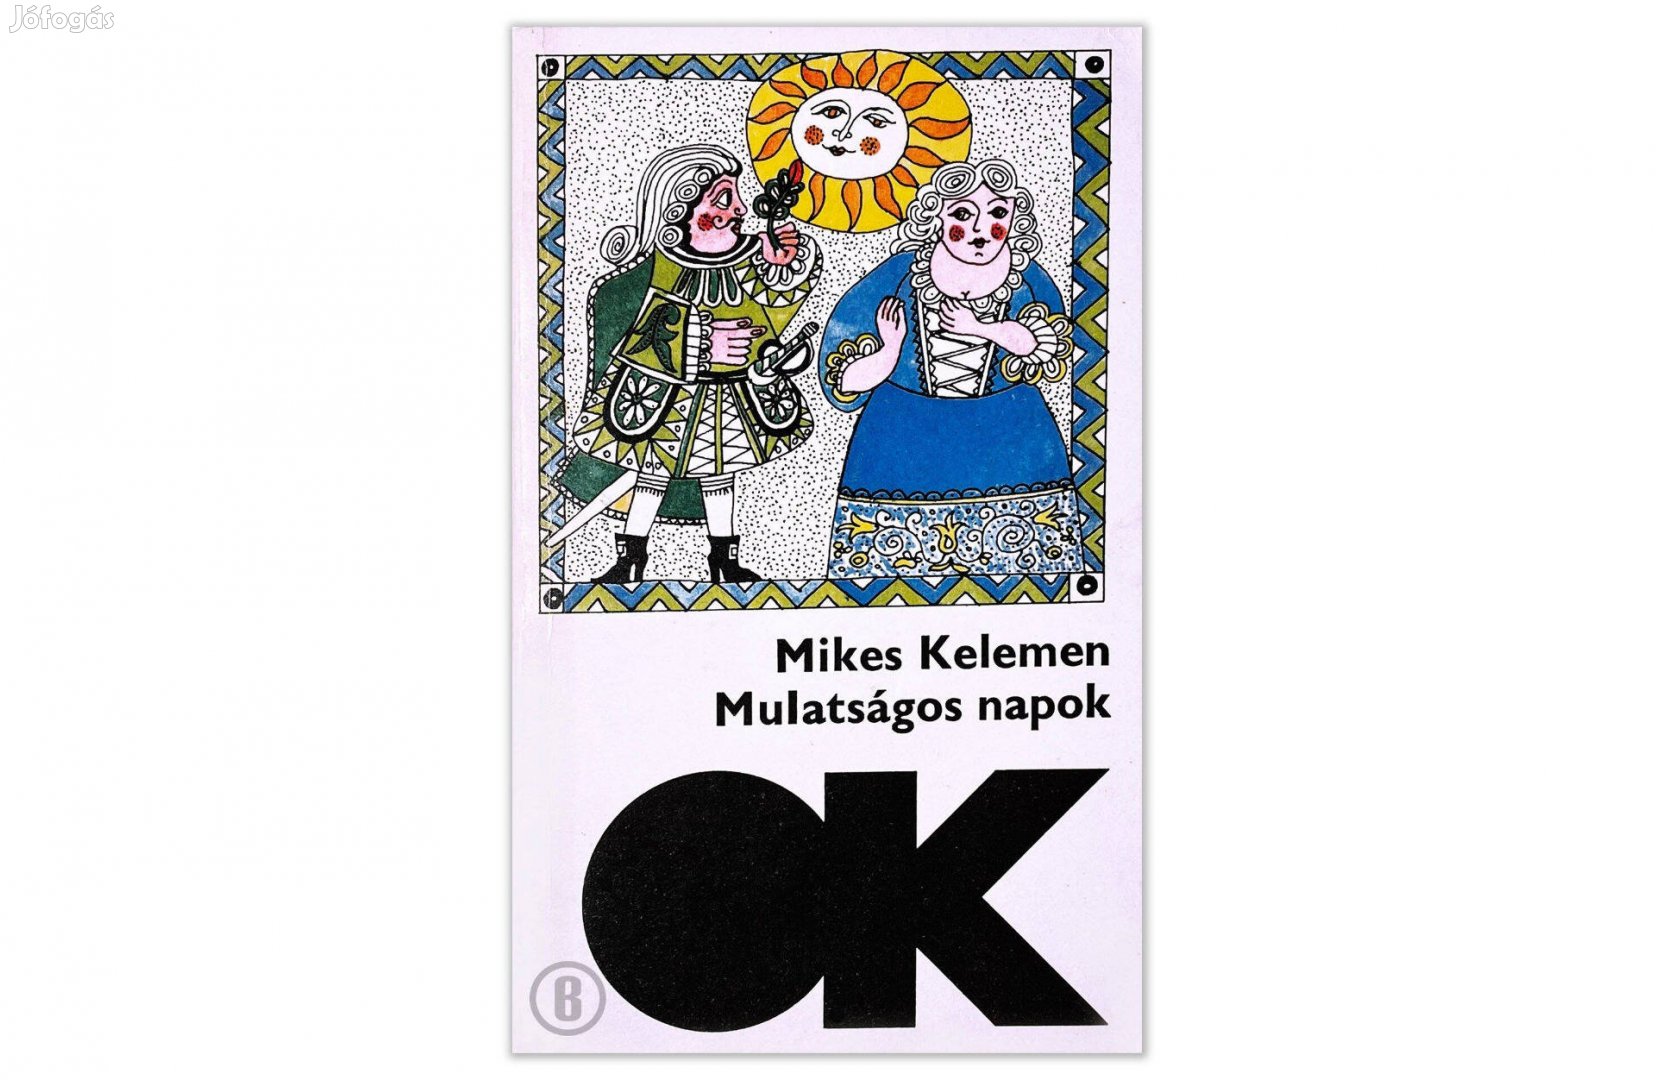 Mikes Kelemen: Mulatságos napok